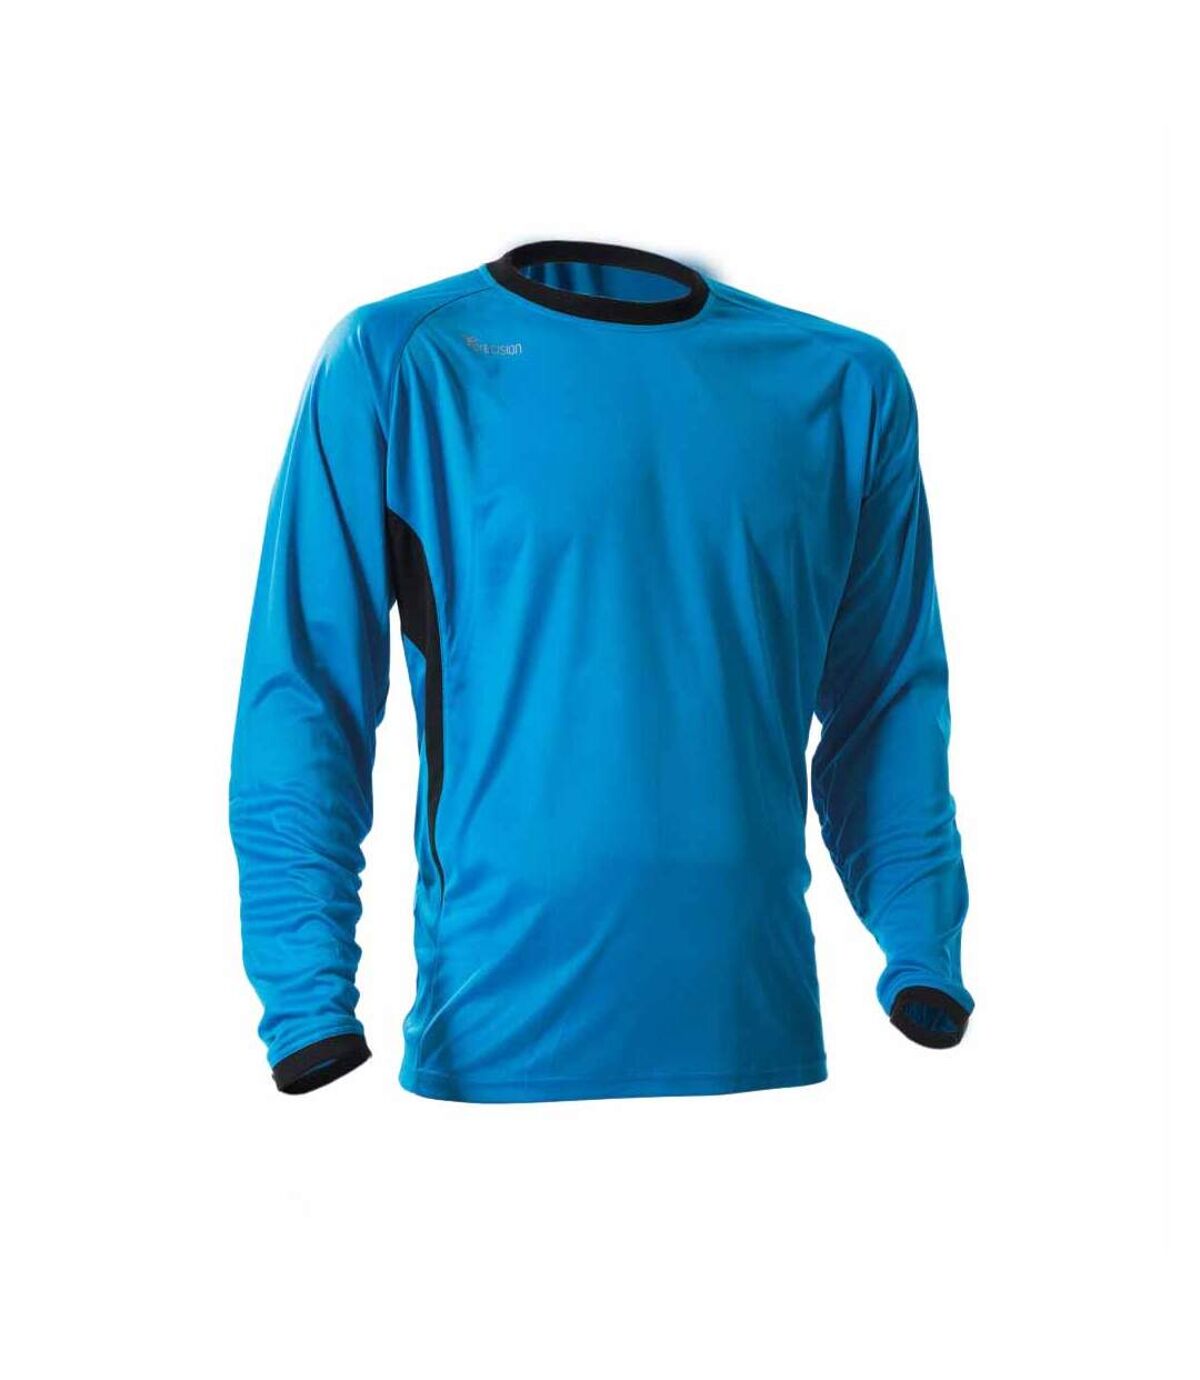 Precision - T-shirt PREMIER - Adulte (Bleu électrique) - UTRD303